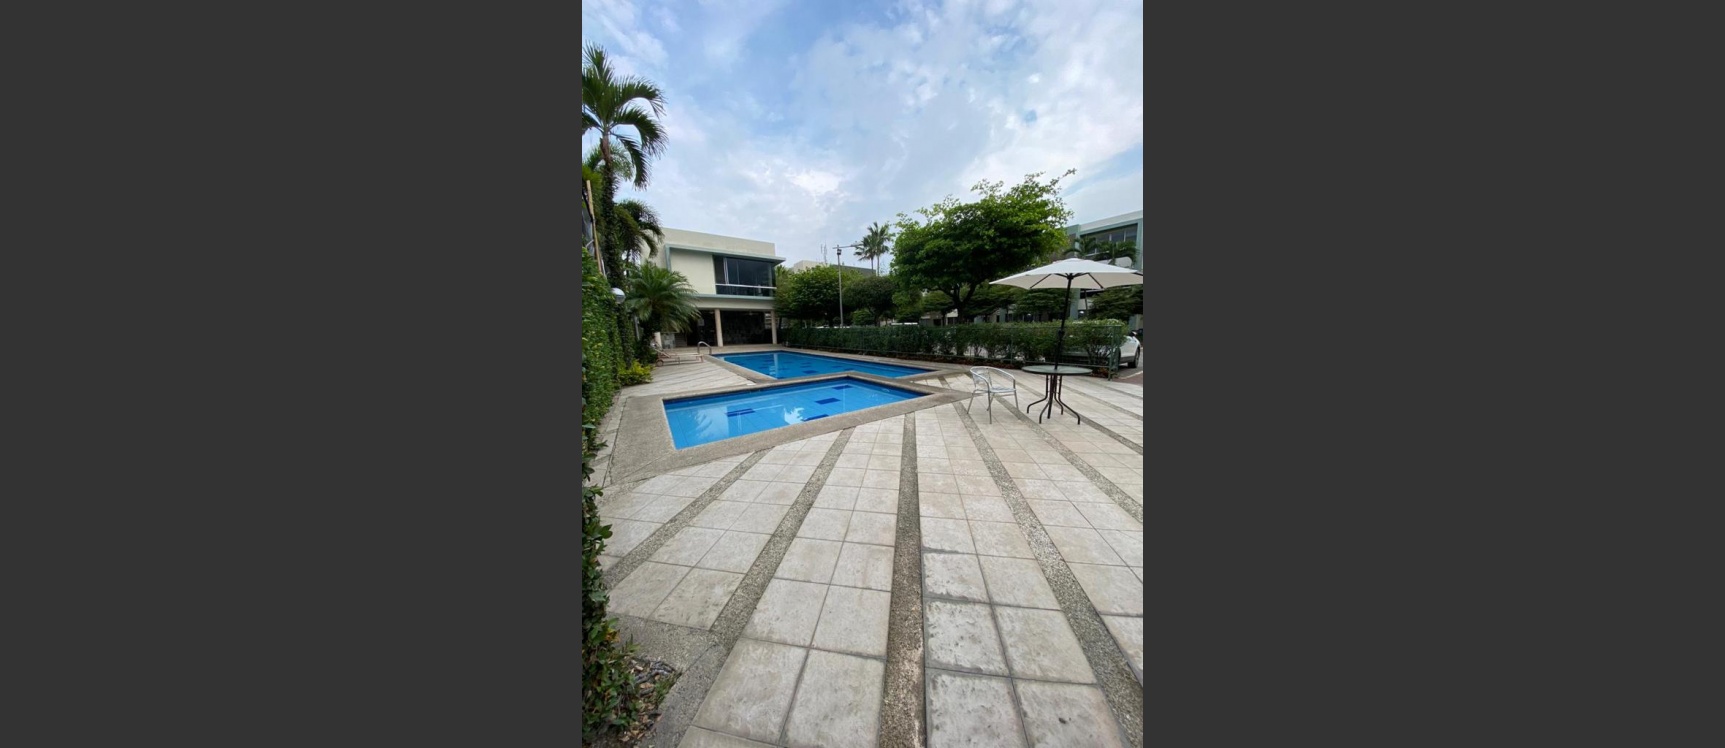 GeoBienes - Departamento en alquiler ubicado en Av. Samborondón - Plusvalia Guayaquil Casas de venta y alquiler Inmobiliaria Ecuador